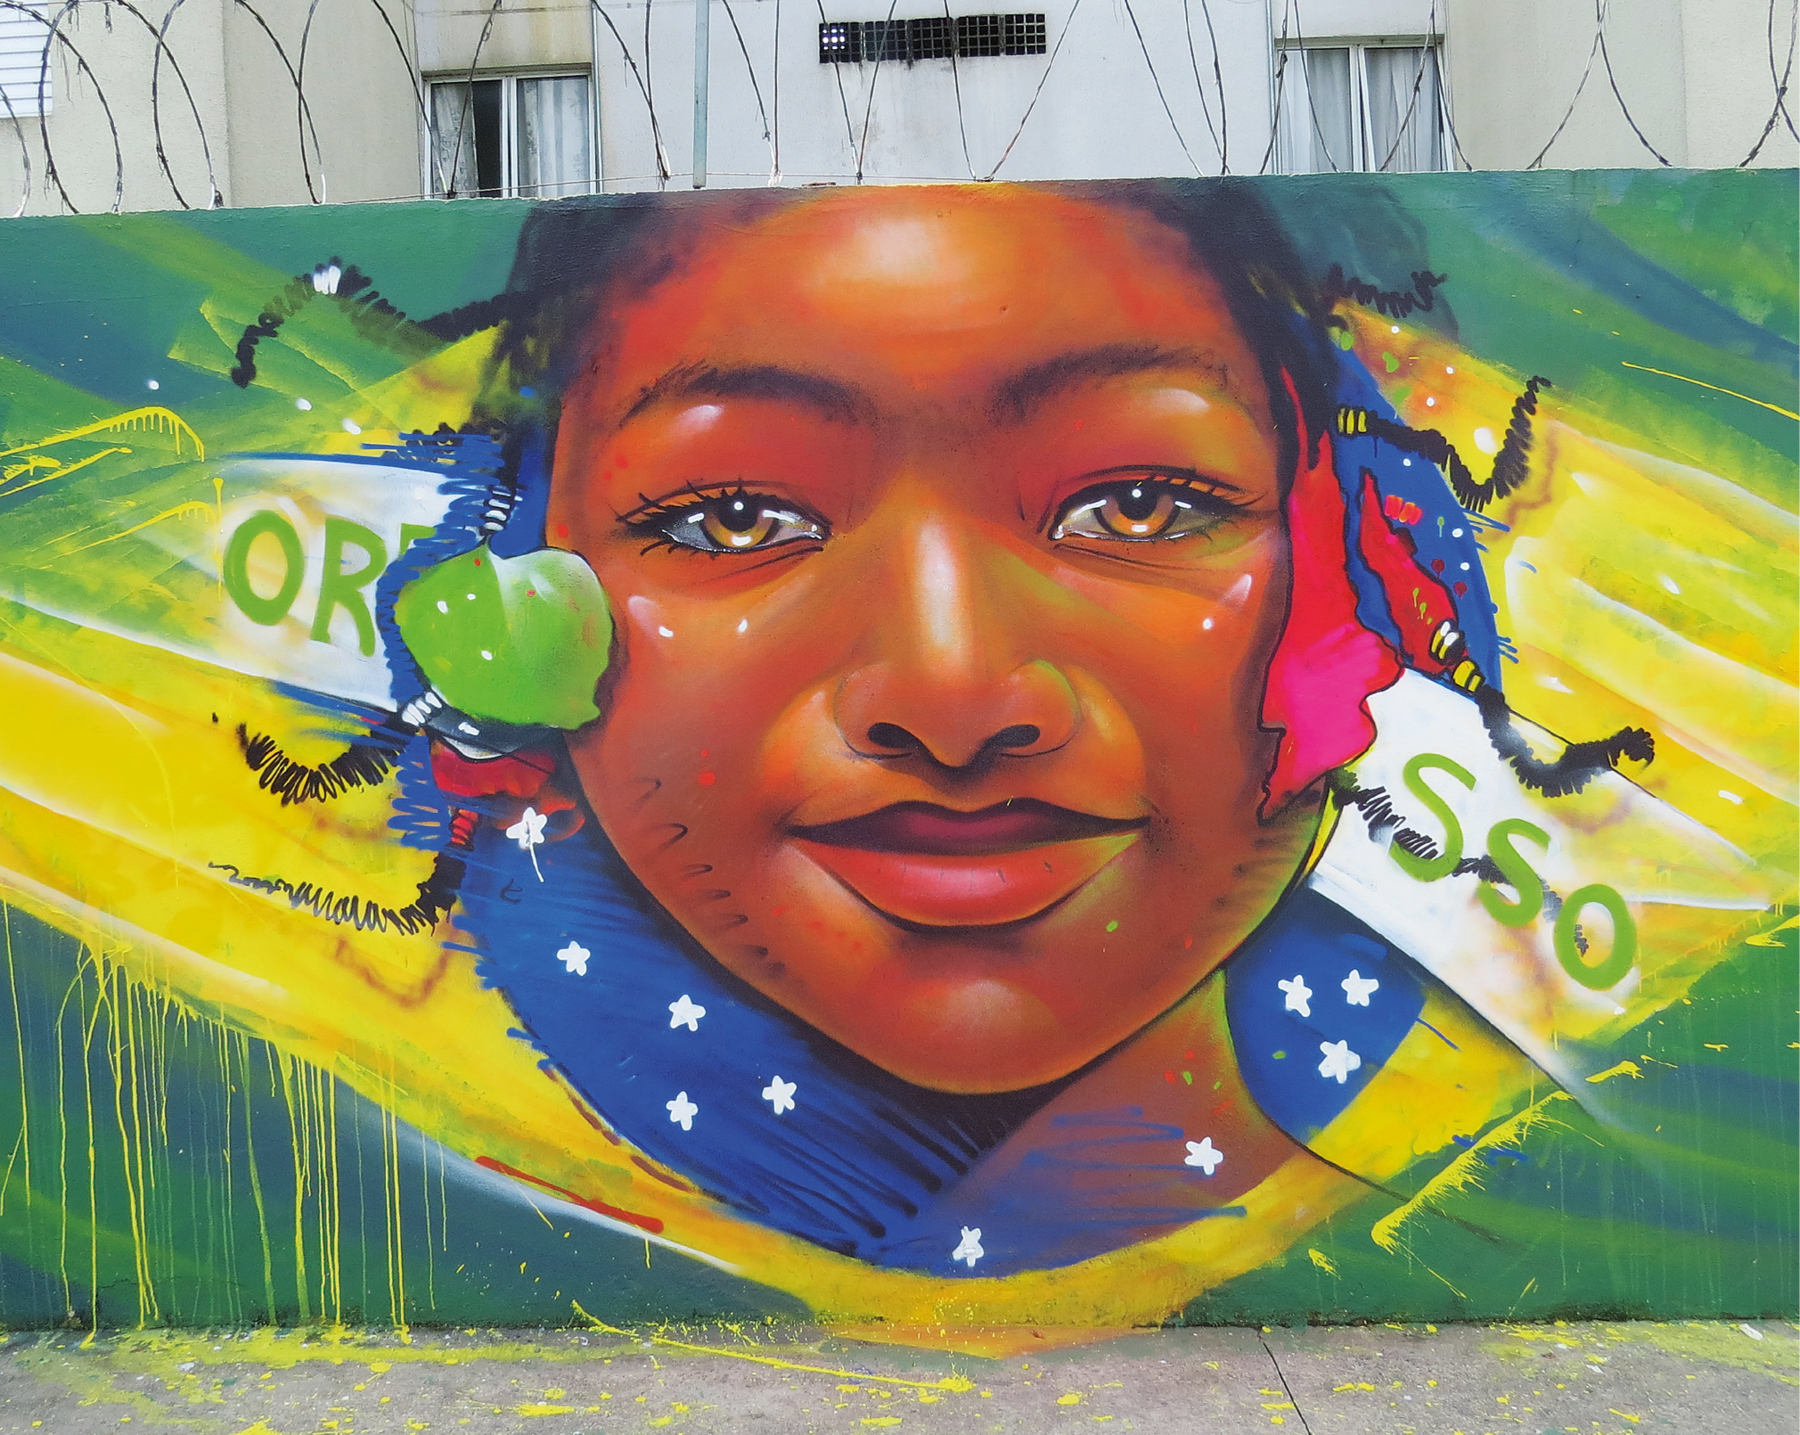 Fotografia. Grafite em um muro. Rosto de uma menina negra dentro do círculo azul da bandeira do Brasil. Ela tem trancinhas no cabelo e está sorrindo com os lábios fechados. No retângulo verde da bandeira marcas de tinta escorrida do losango amarelo. No alto do muro, arame farpado e, ao fundo, algumas janelas de um prédio.